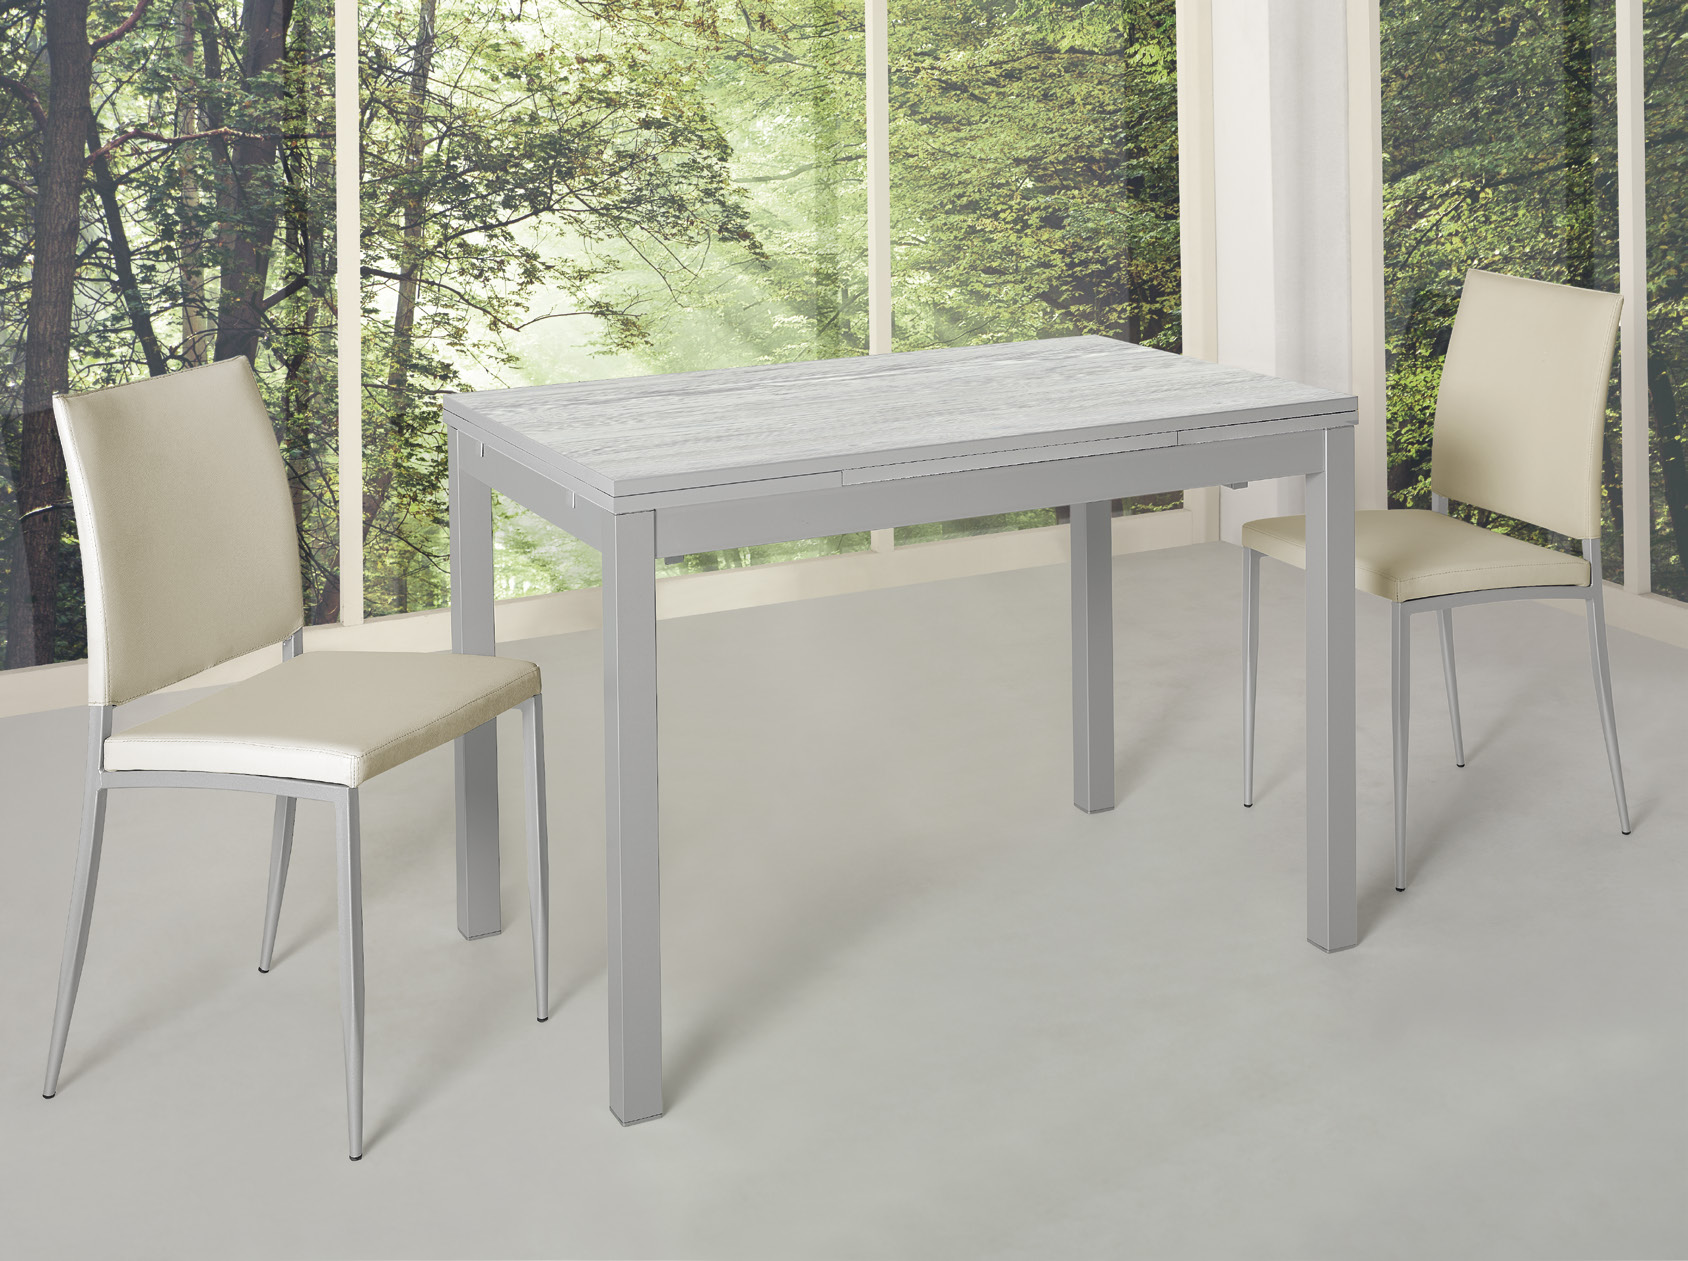 Mesa cocina de cristal templado y estructura metálica gris de 110x70  extensible.